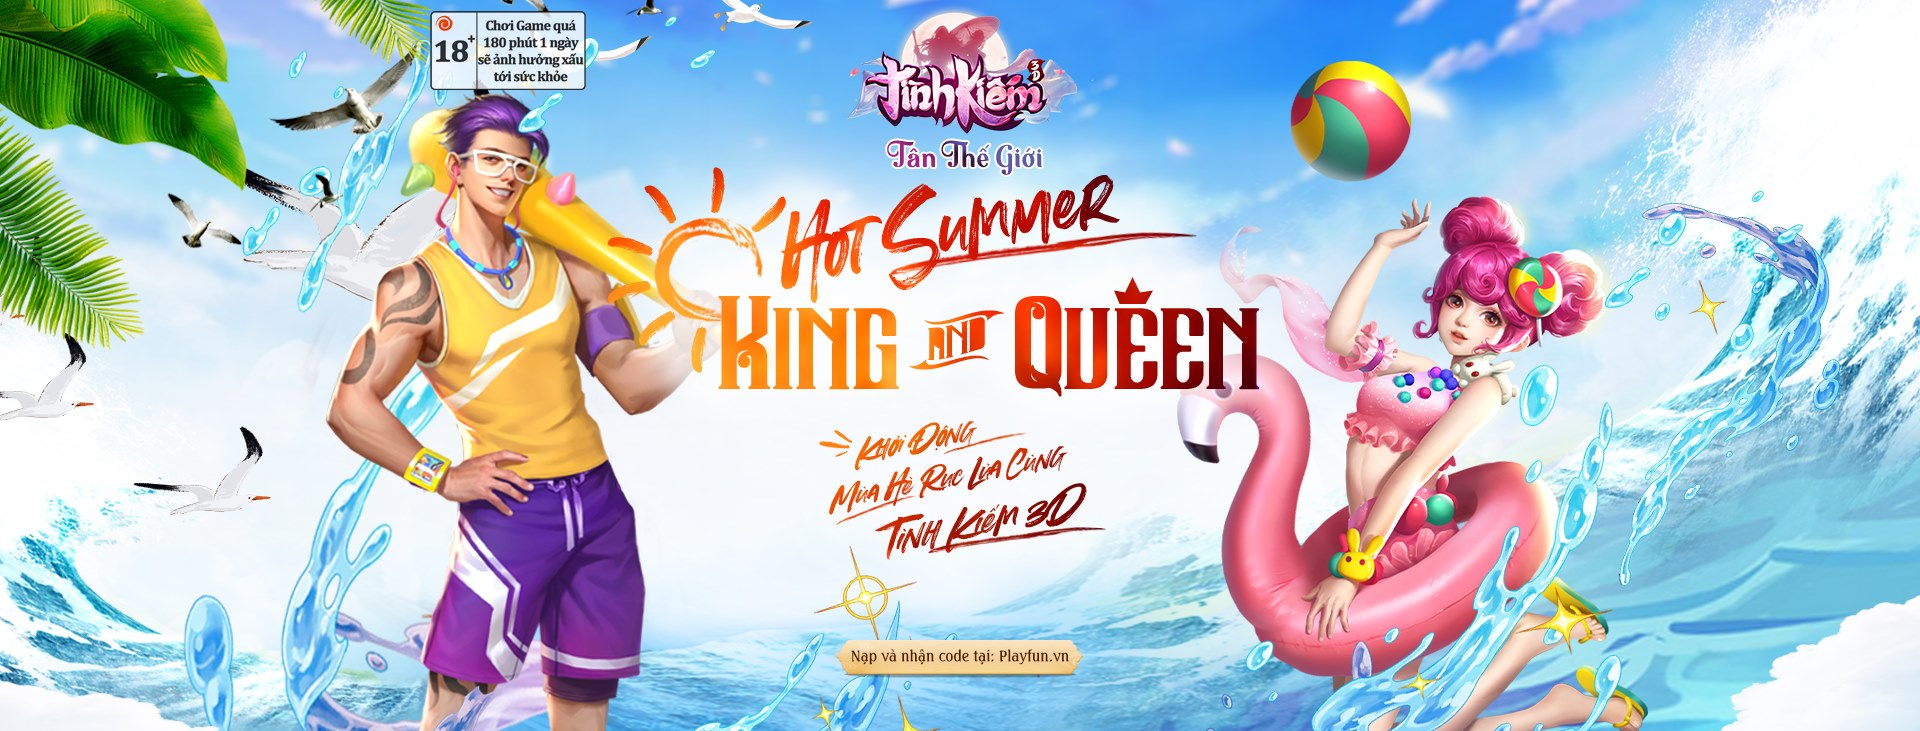 kiem - Hot summer – King & Queen Tình Kiếm 3D tự tin phá đảo tiêu chuẩn trai xinh gái đẹp TK3D-HS-1